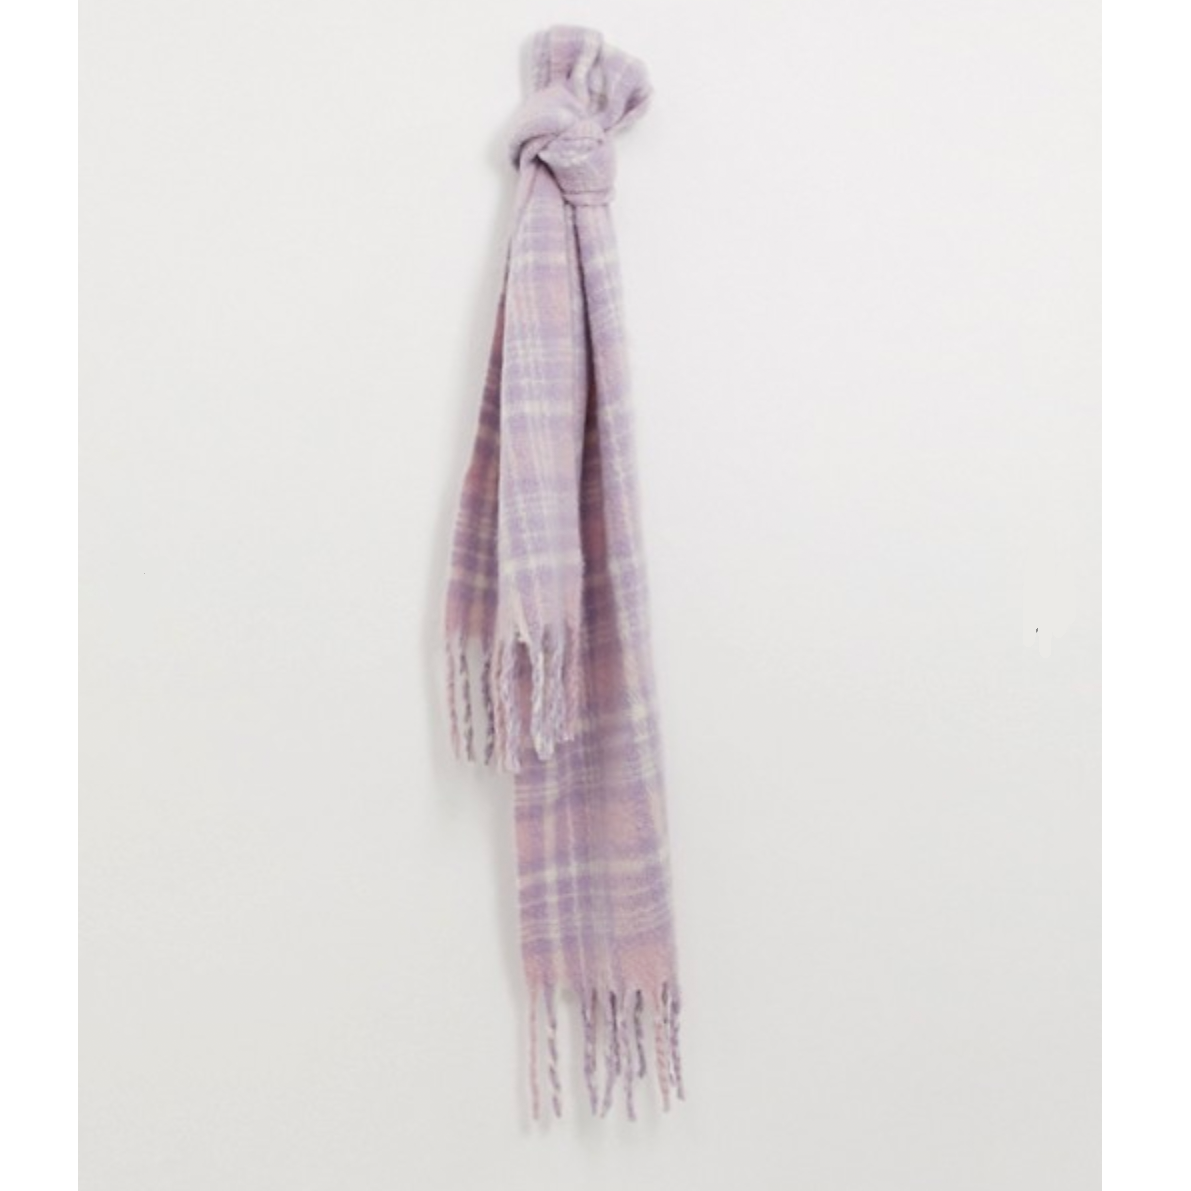 bufanda-asos-barata. Regalo de amigo invisible por menos de 30 euros: bufanda para invierno